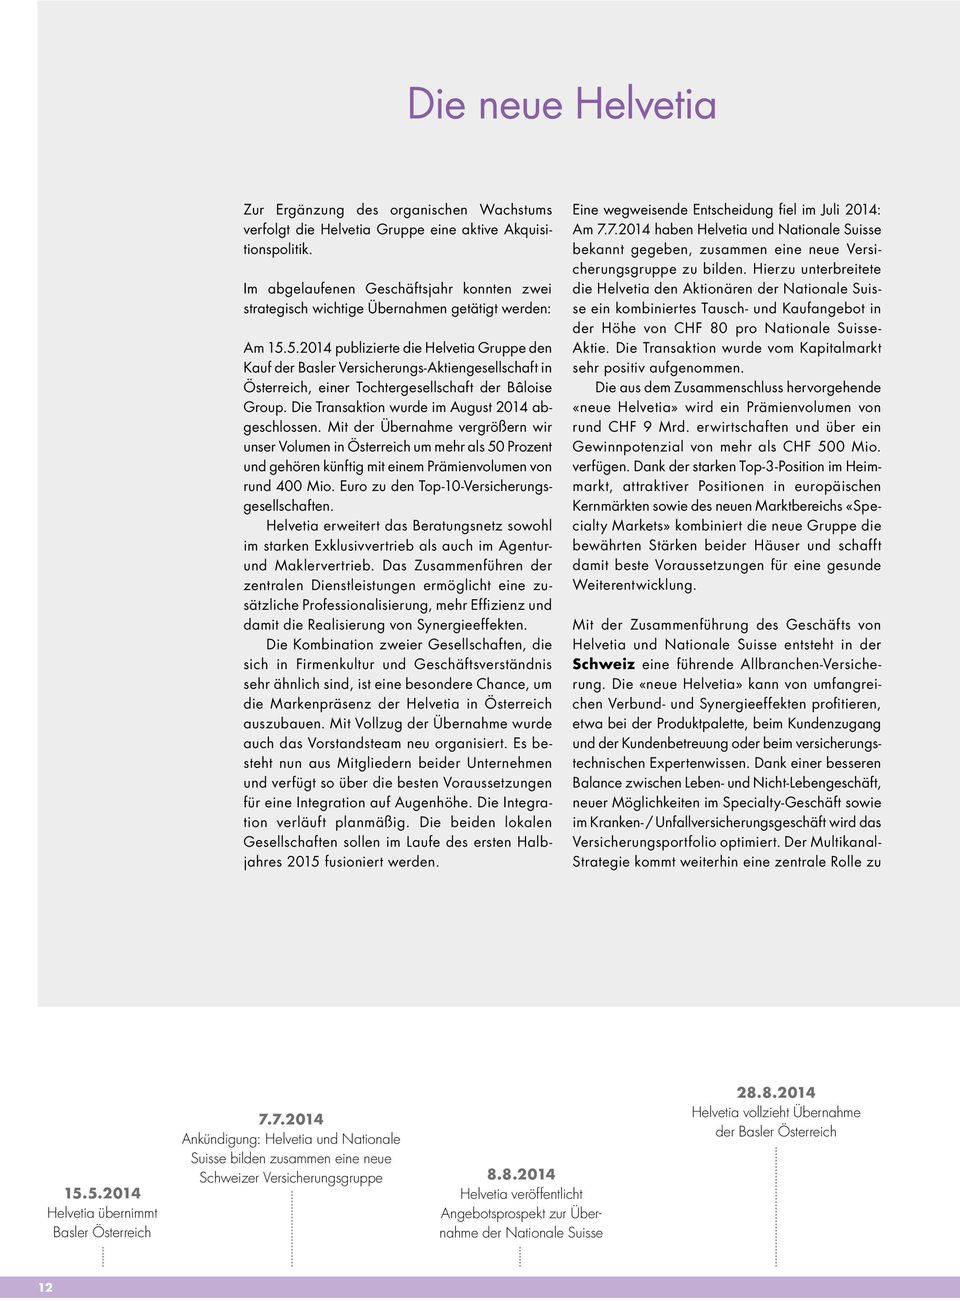 5.2014 publizierte die Helvetia Gruppe den Kauf der Basler Versicherungs-Aktiengesellschaft in Österreich, einer Tochtergesellschaft der Bâloise Group.